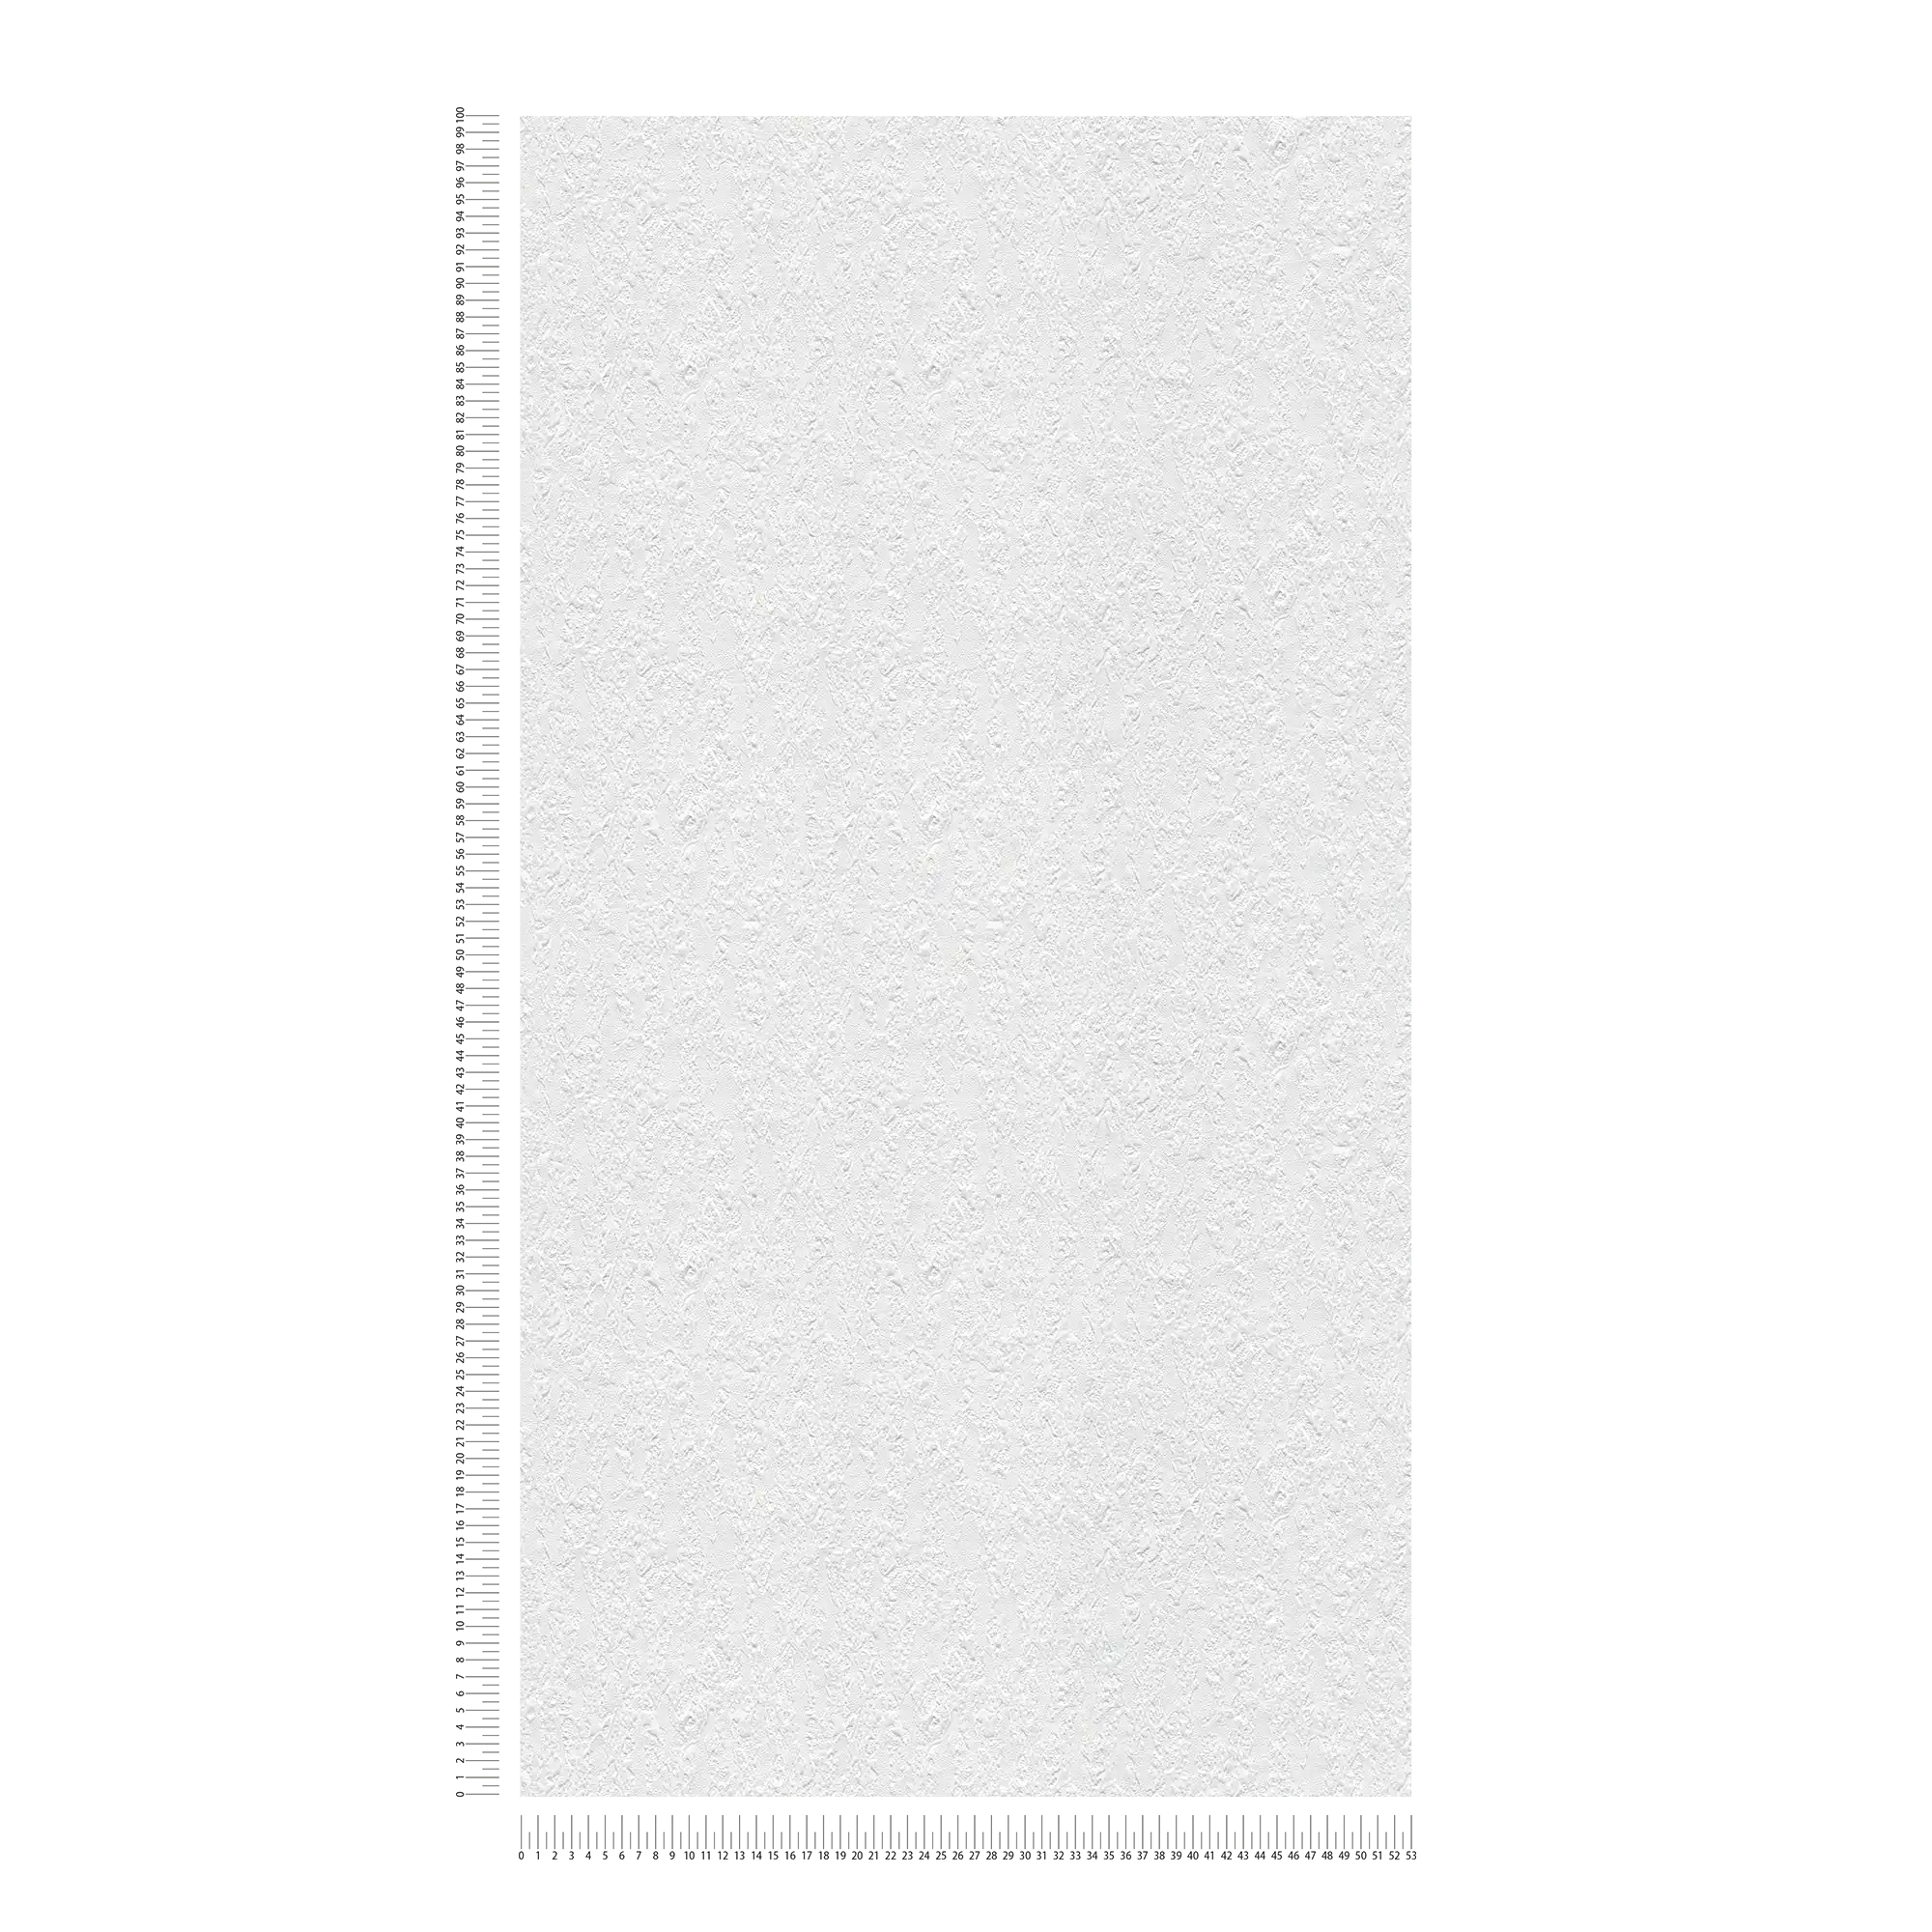             Carta da parati con motivo strutturato in aspetto grezzo - verniciabile, bianco
        